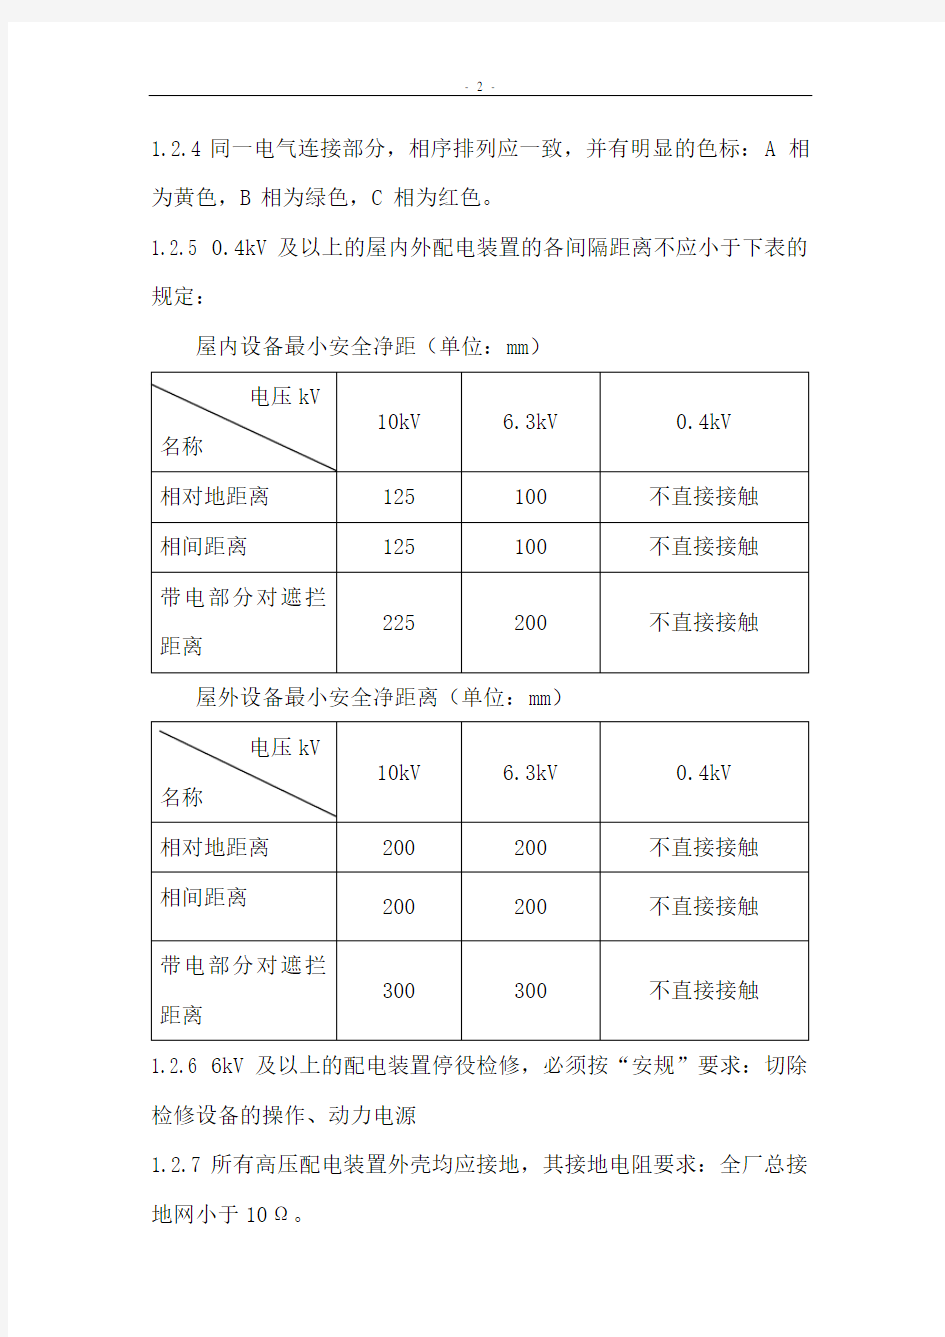 刘村坝水电站水轮发电机运行规程